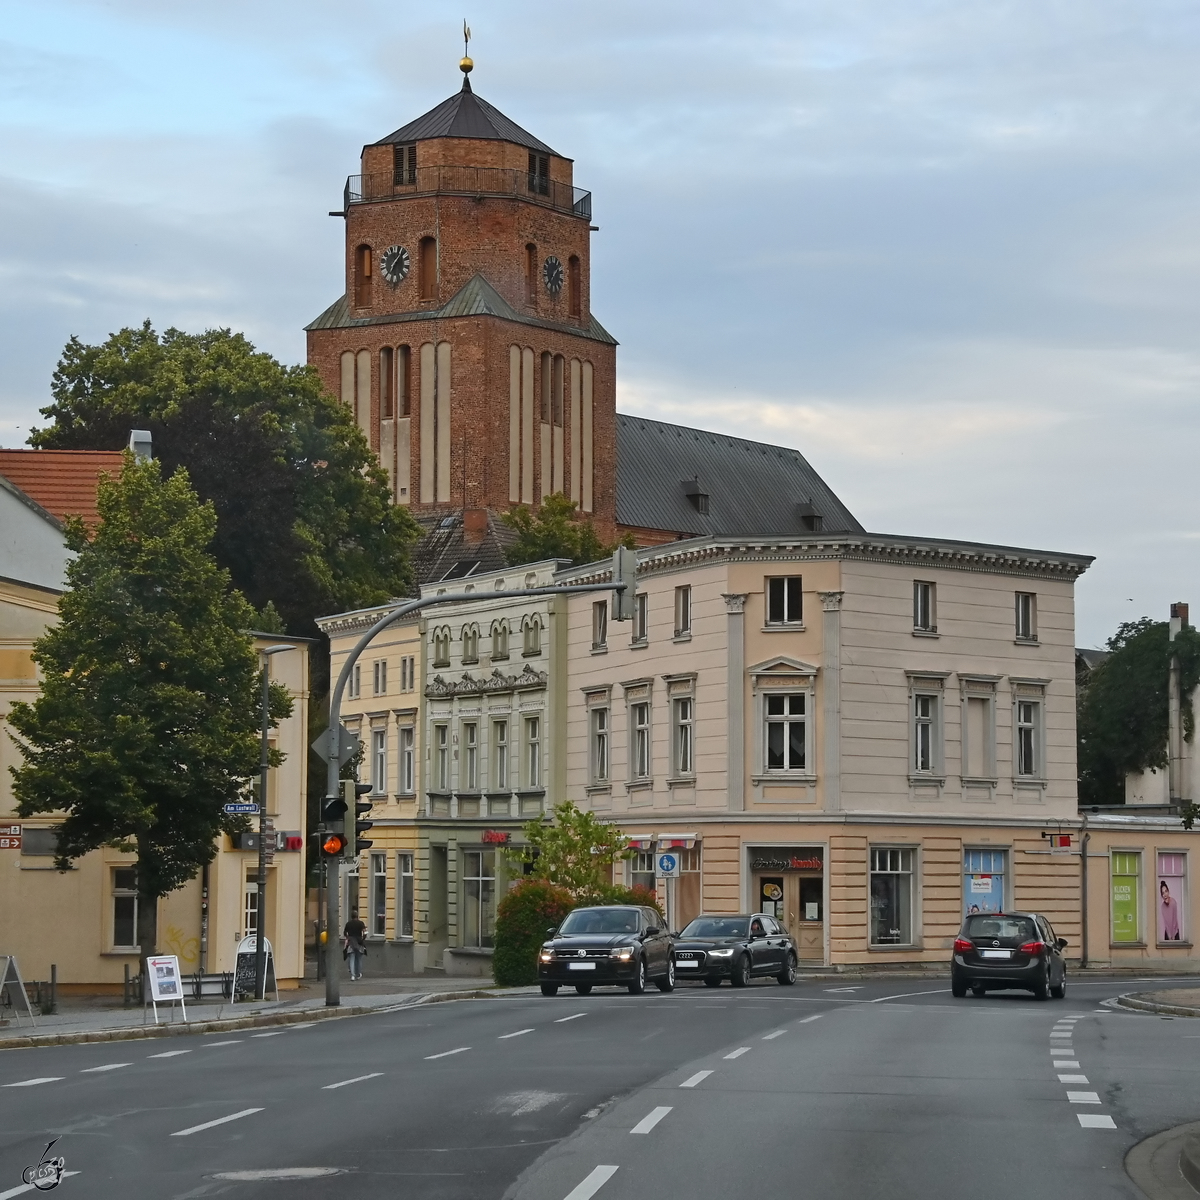 Auf dem Weg nach Usedom kommen jetzt gleich die engen Gassen im Zentrum von Wolgast. Im Hintergrund die alles überragende St.-Petri-Kirche. (August 2021)